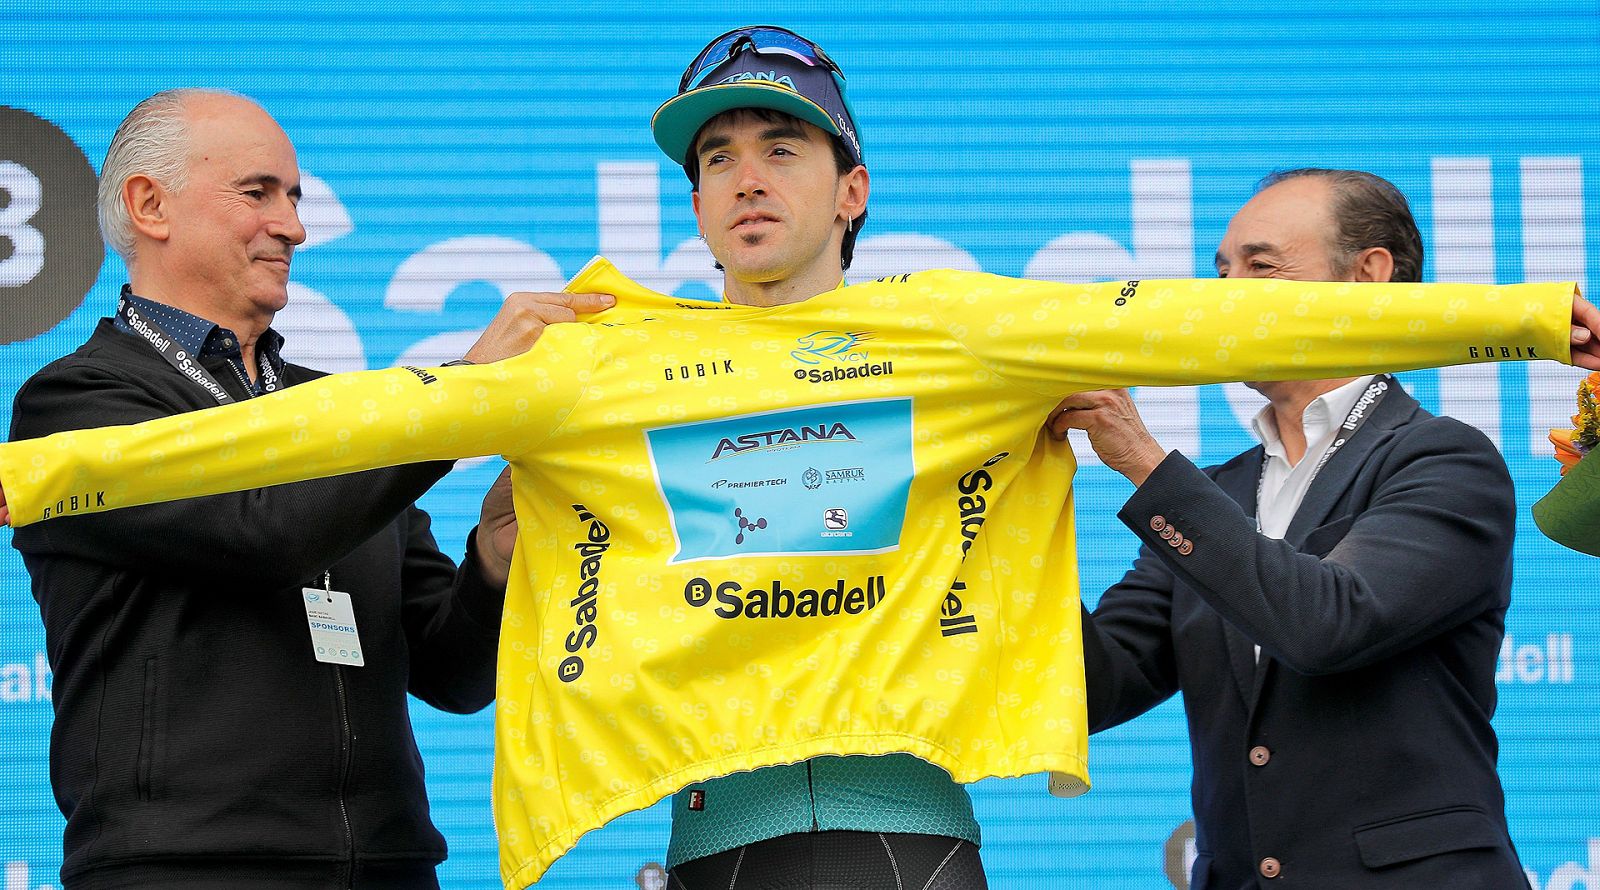 Ion Izaguirre recibe el maillot de líder de la Volta a la Comunitat Valenciana.